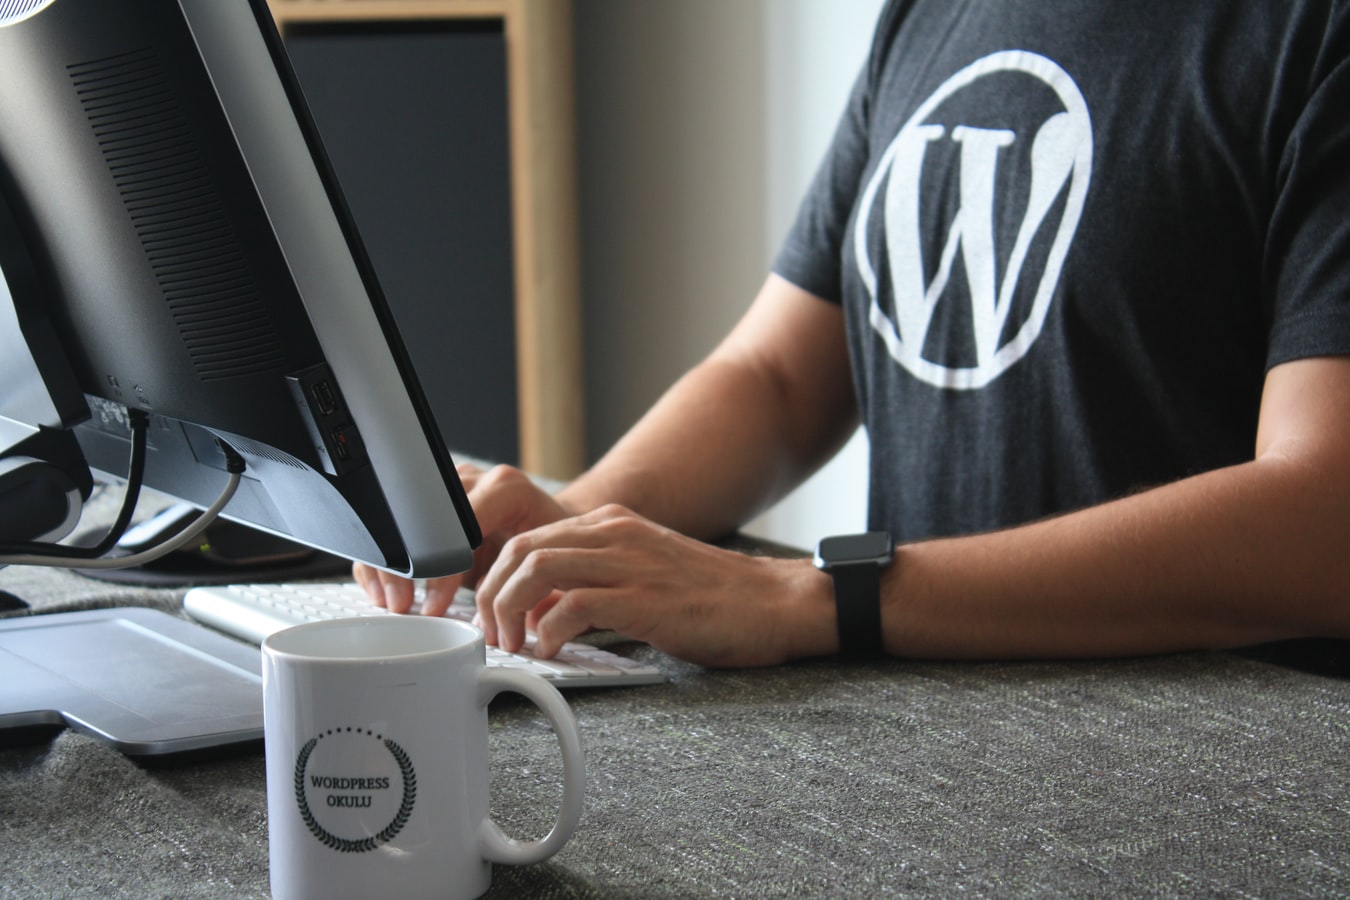 Diseño web para agencias en Wordpress